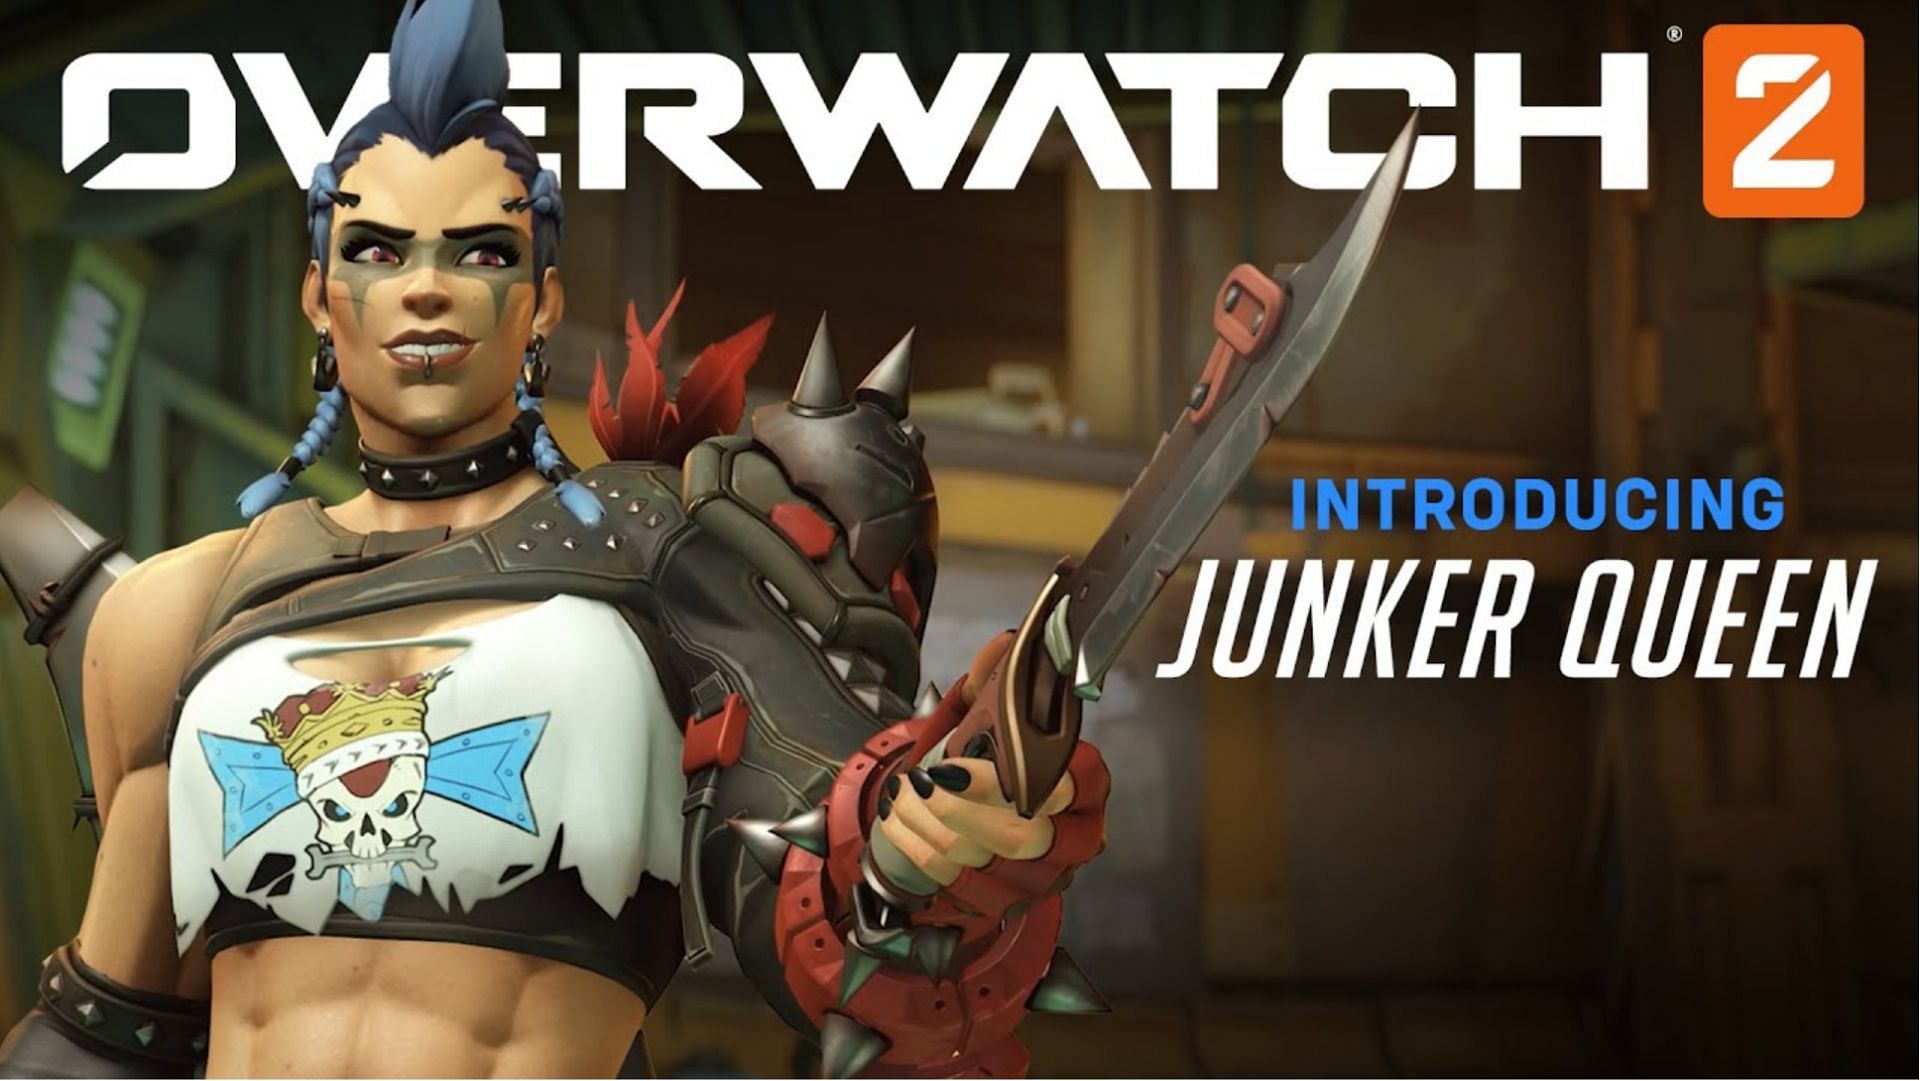 Overwatch 2 Beta introduces Junker Queen (Image via Blizzard)